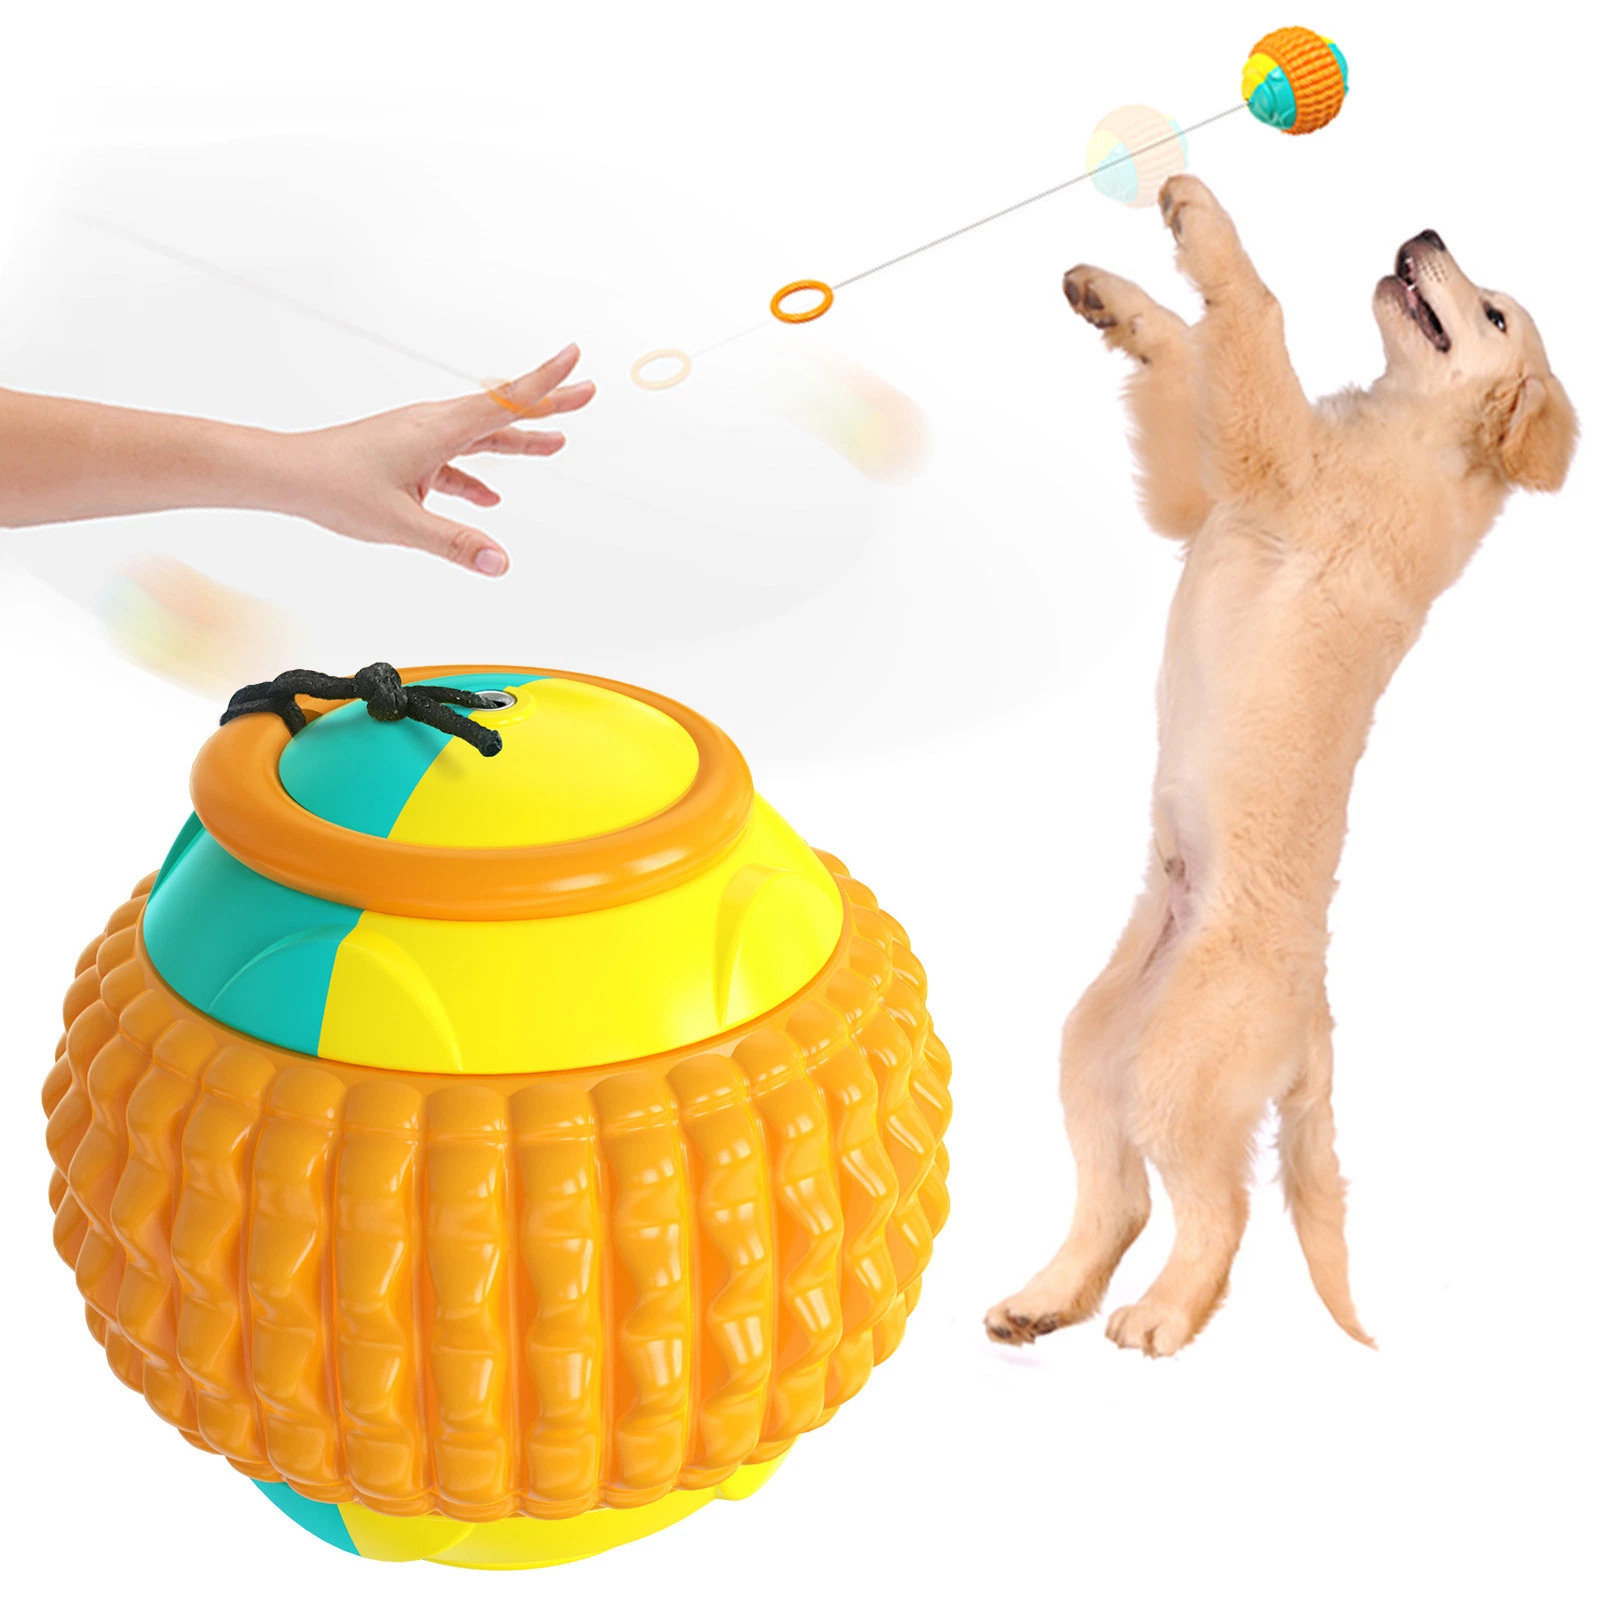 Cão Toy Ball humano - Animais interação bola saltitantes Animais produtos